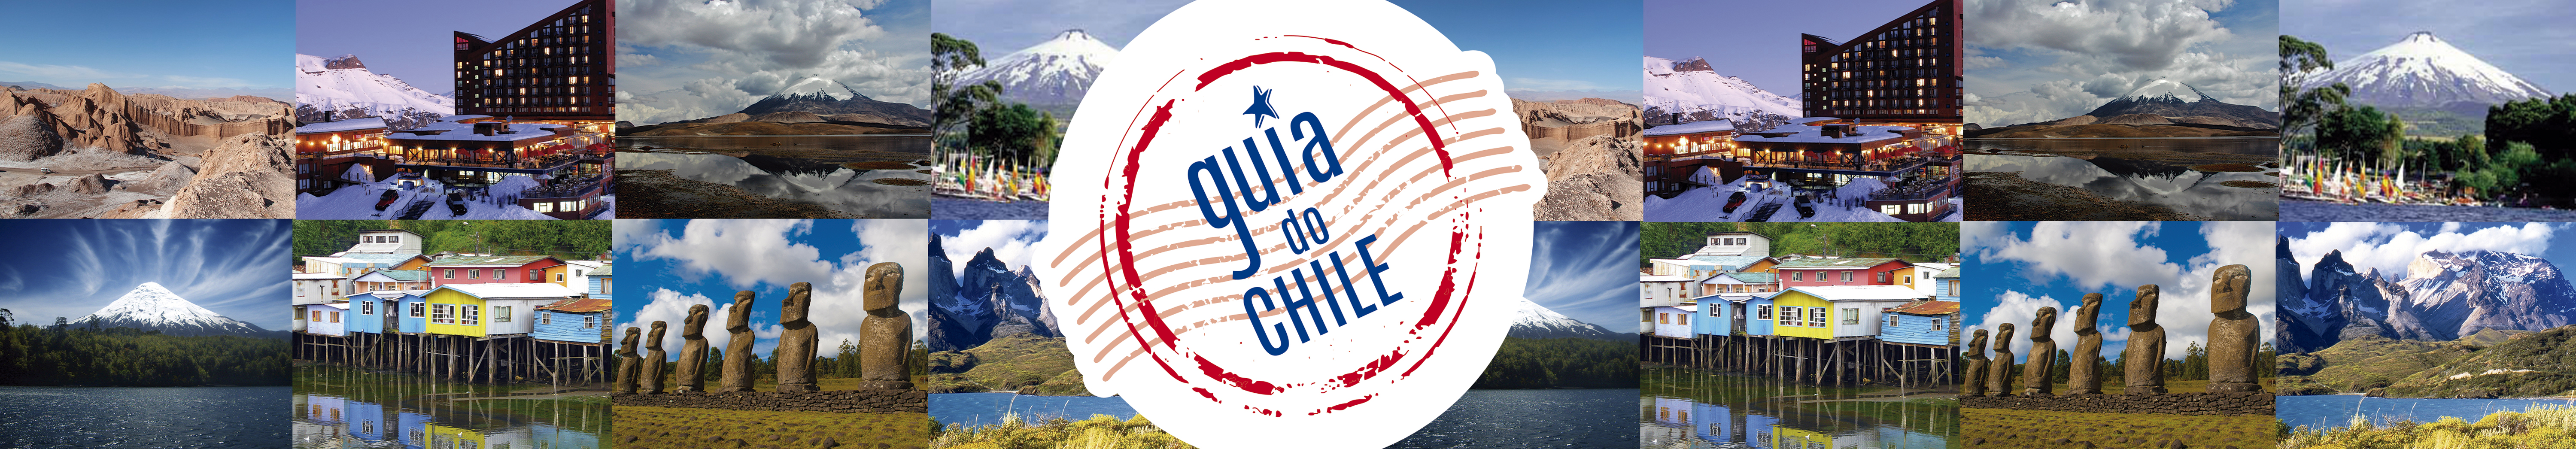 Guia do Chile